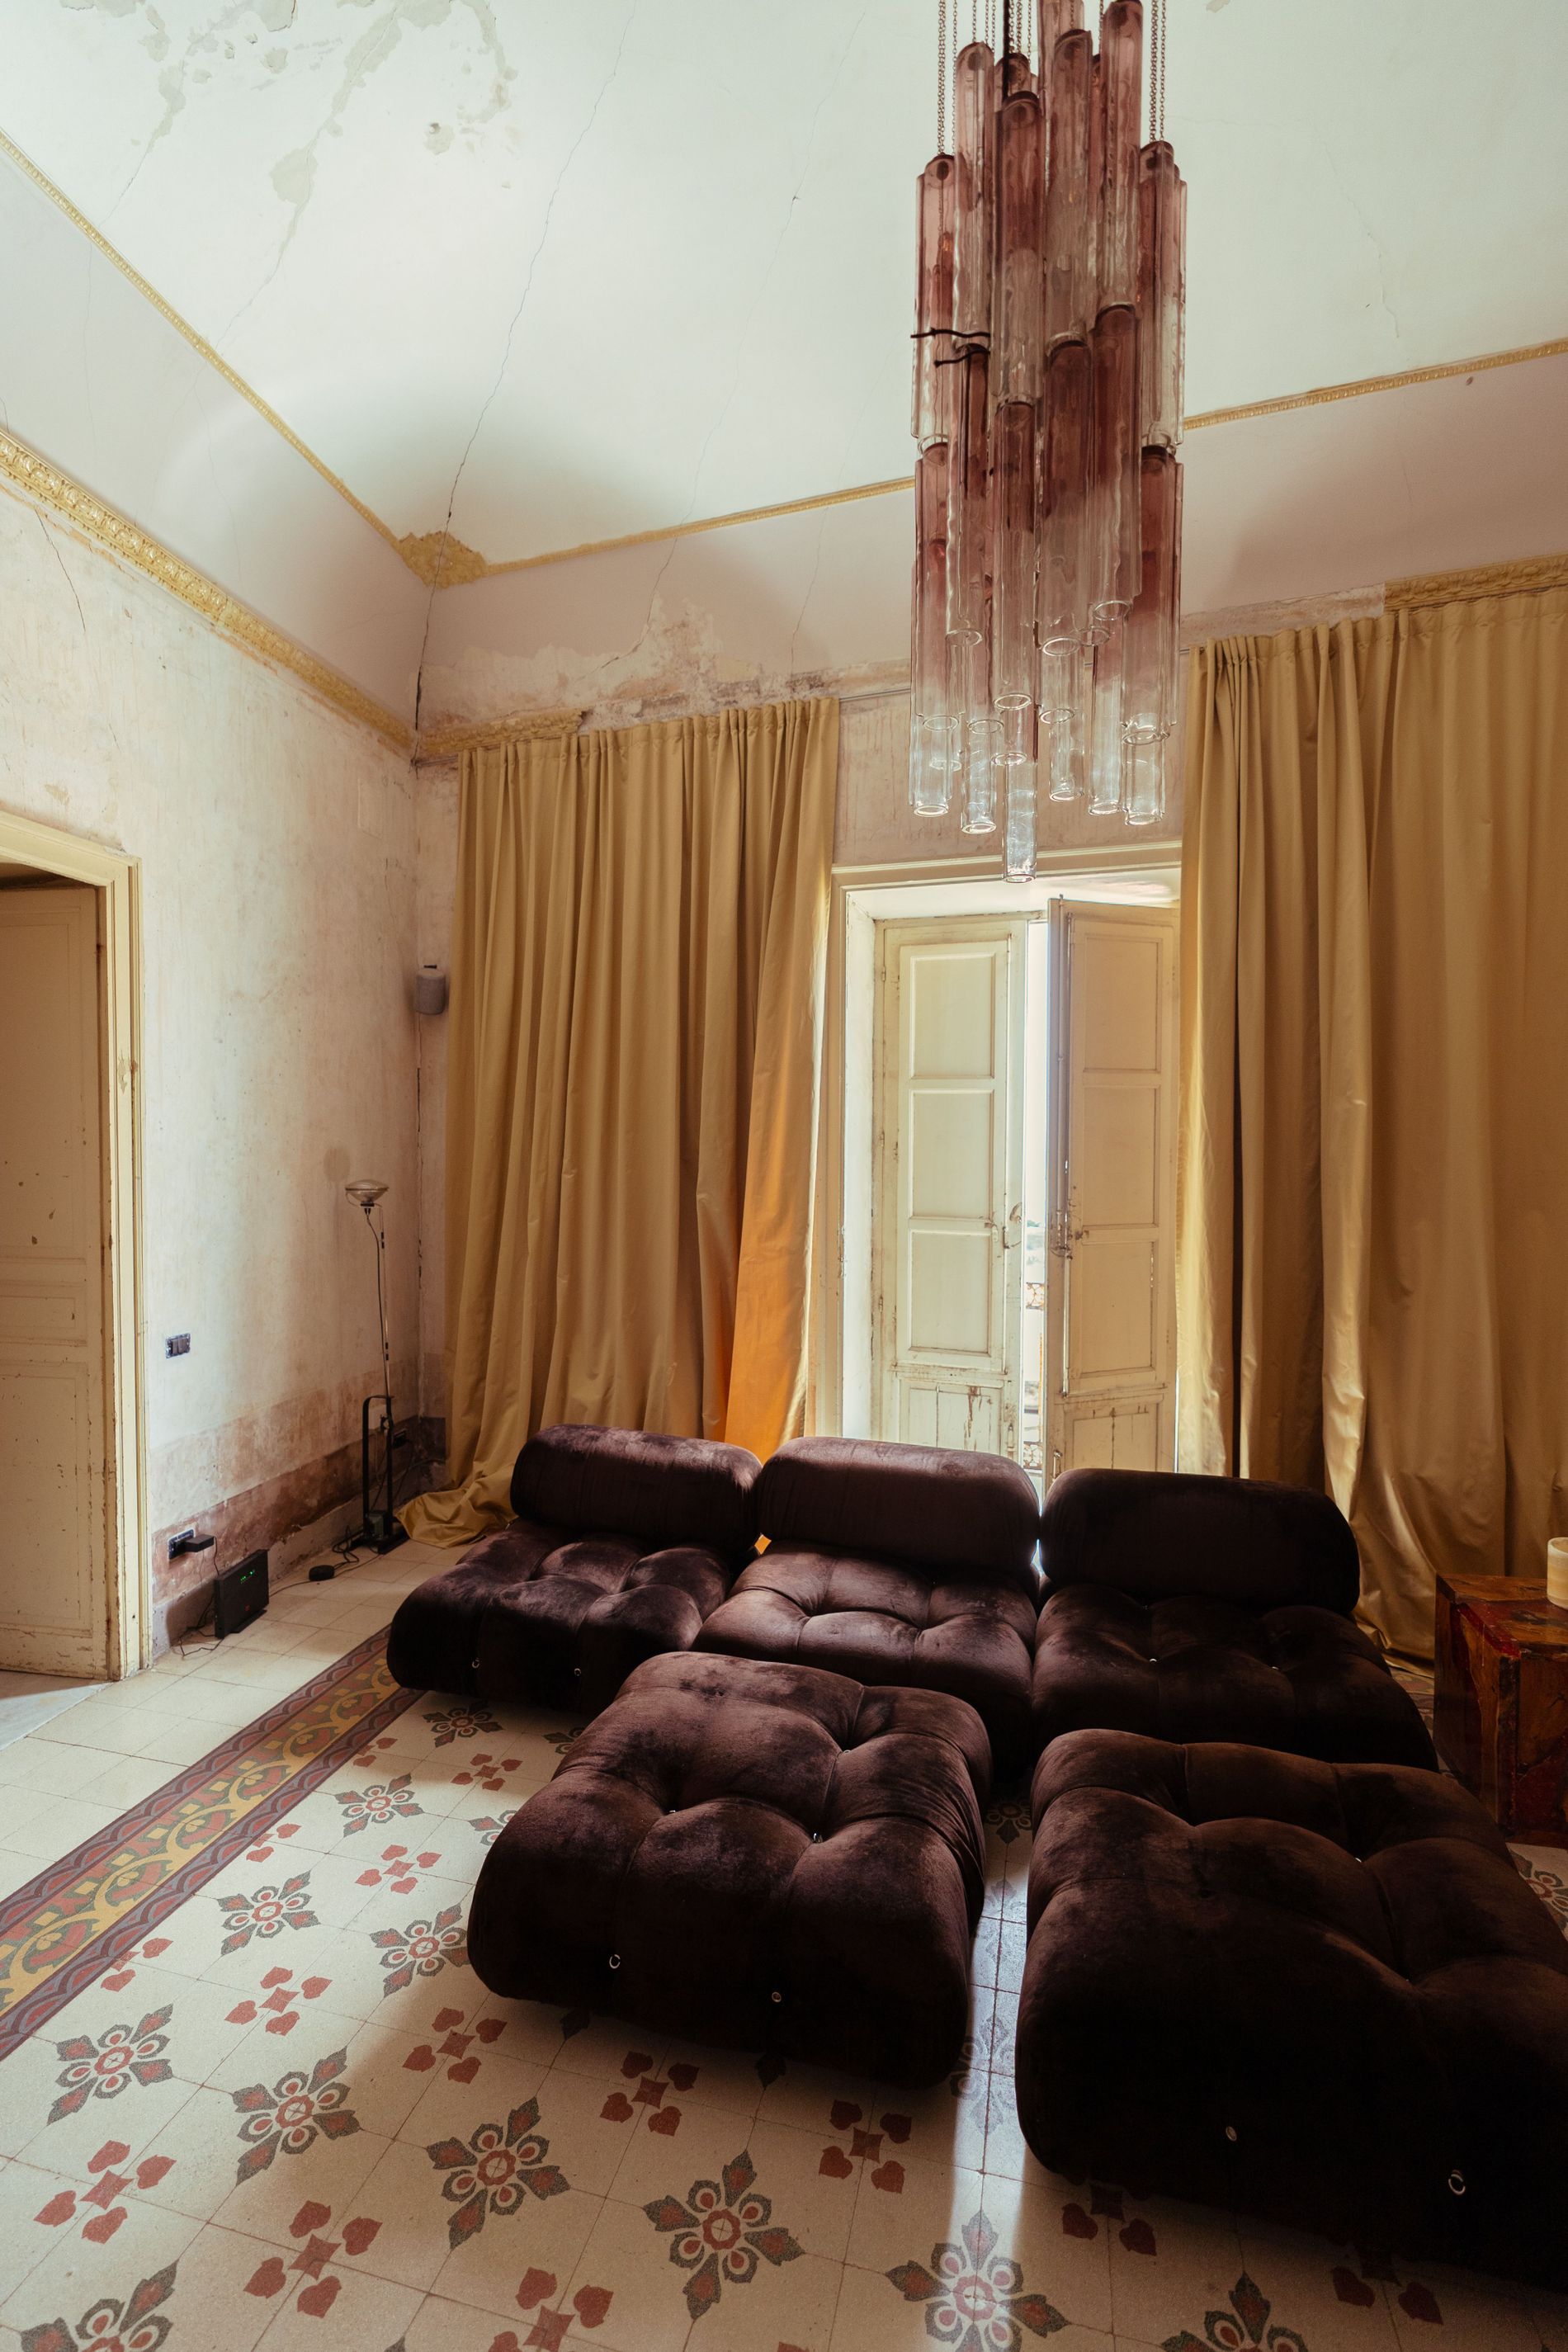 Arne Aksel velvet brown sofa chubby interiors modern